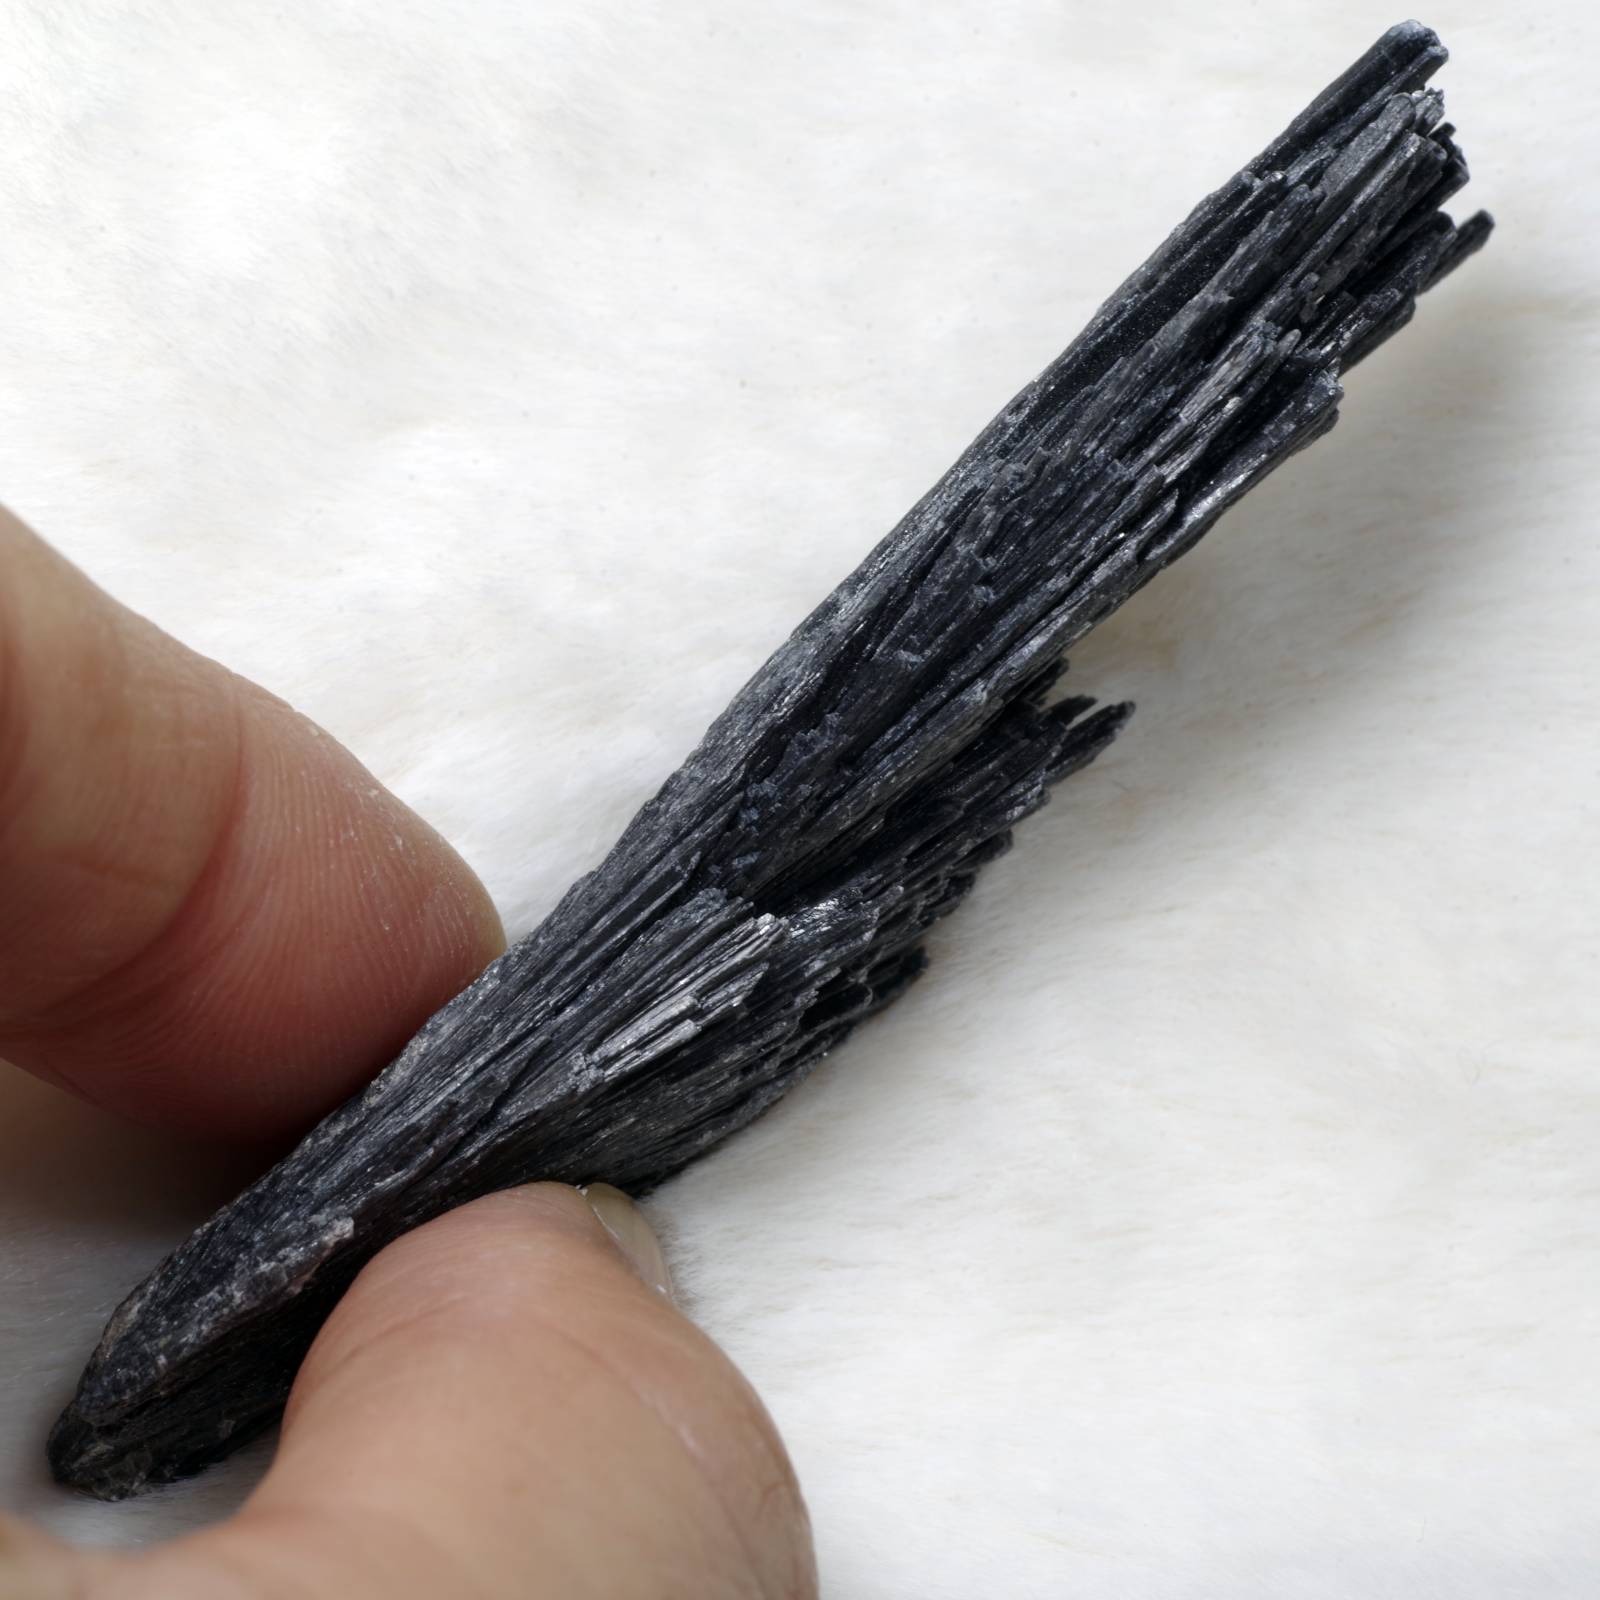 カイヤナイト 藍晶石 黒 ブラジル産3 Black Kyanite Brazil 原石 写真